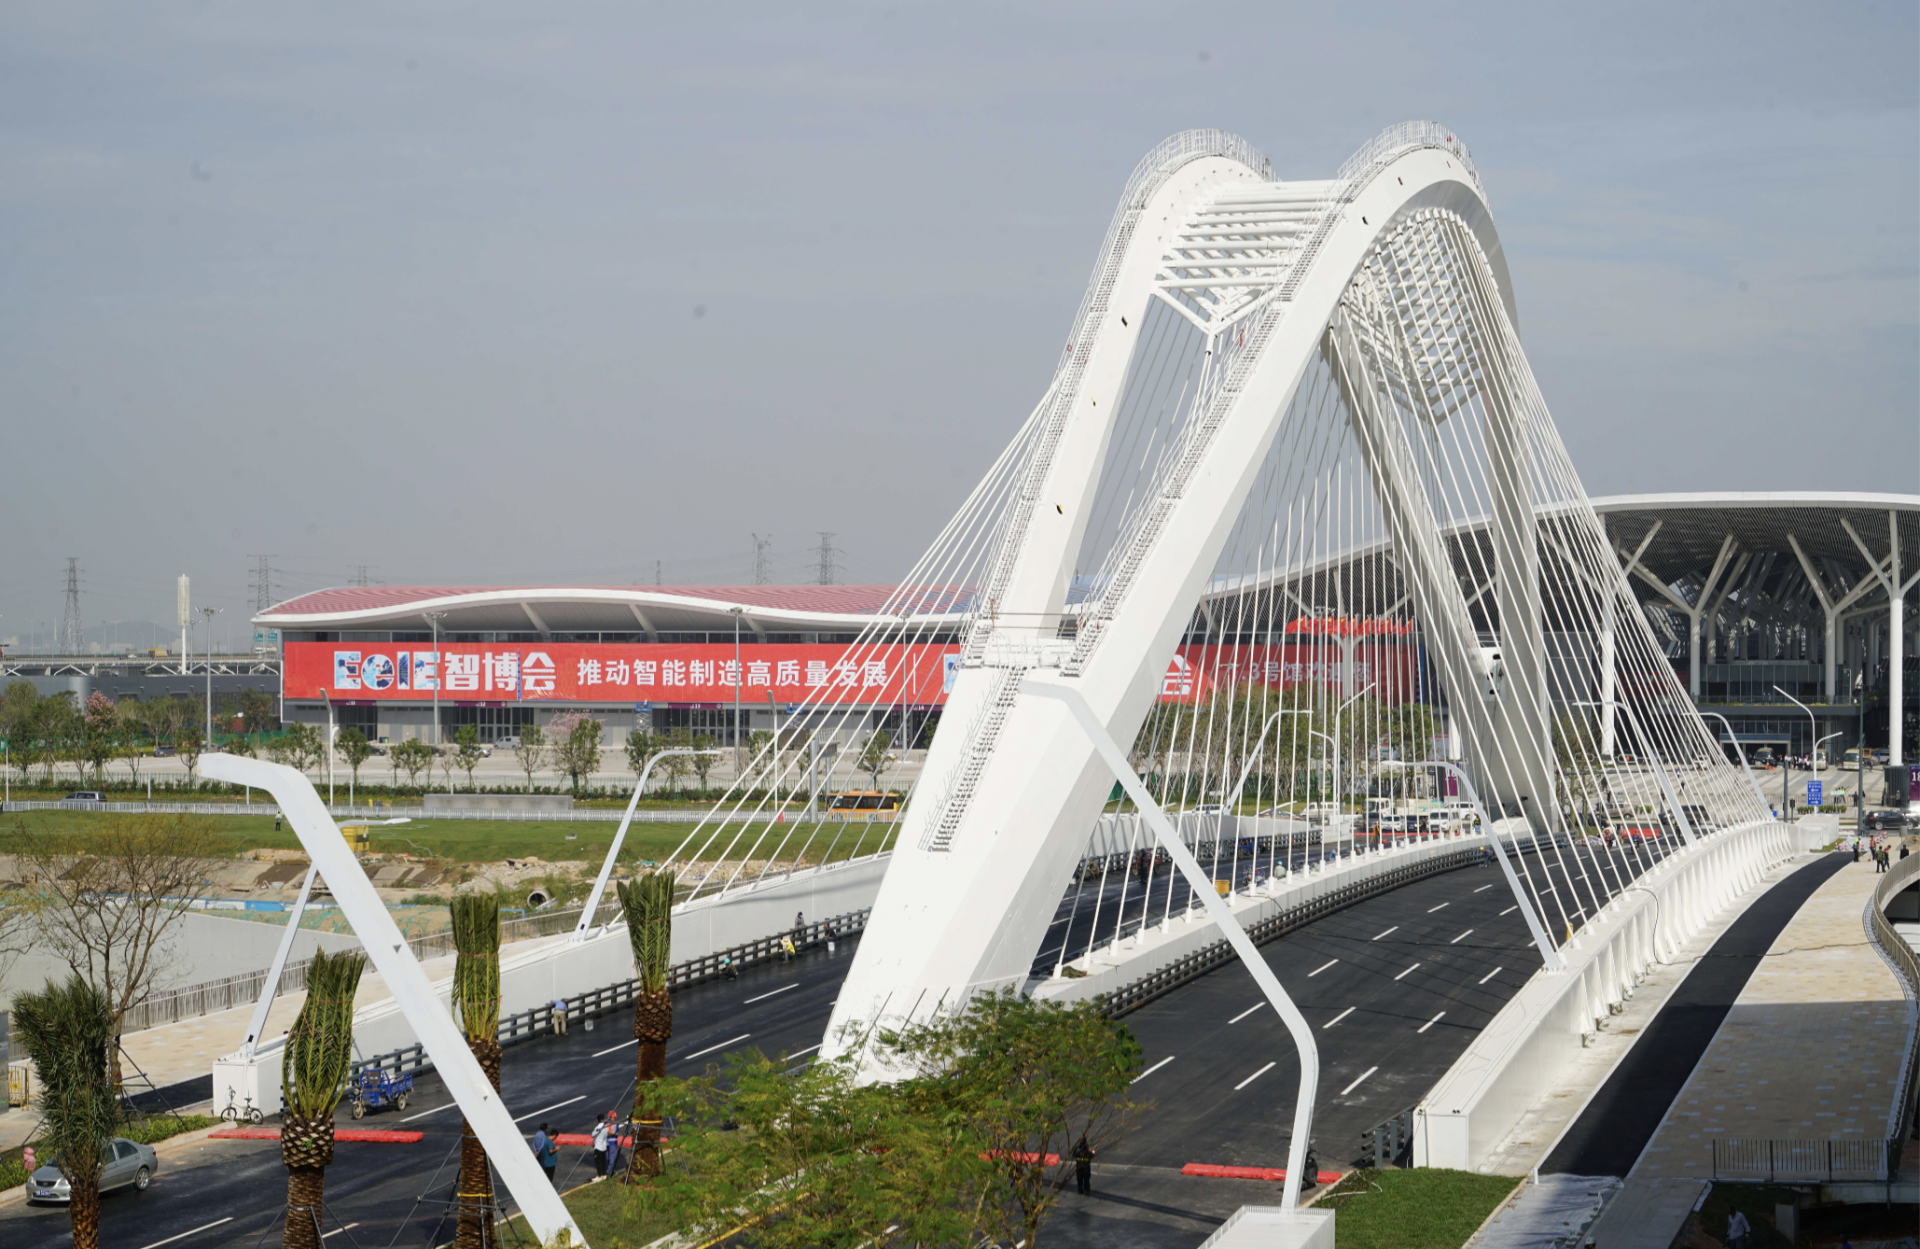 空港新城综合管廊及道路一体化建设荣获“建筑新技术应用示范工程”称号